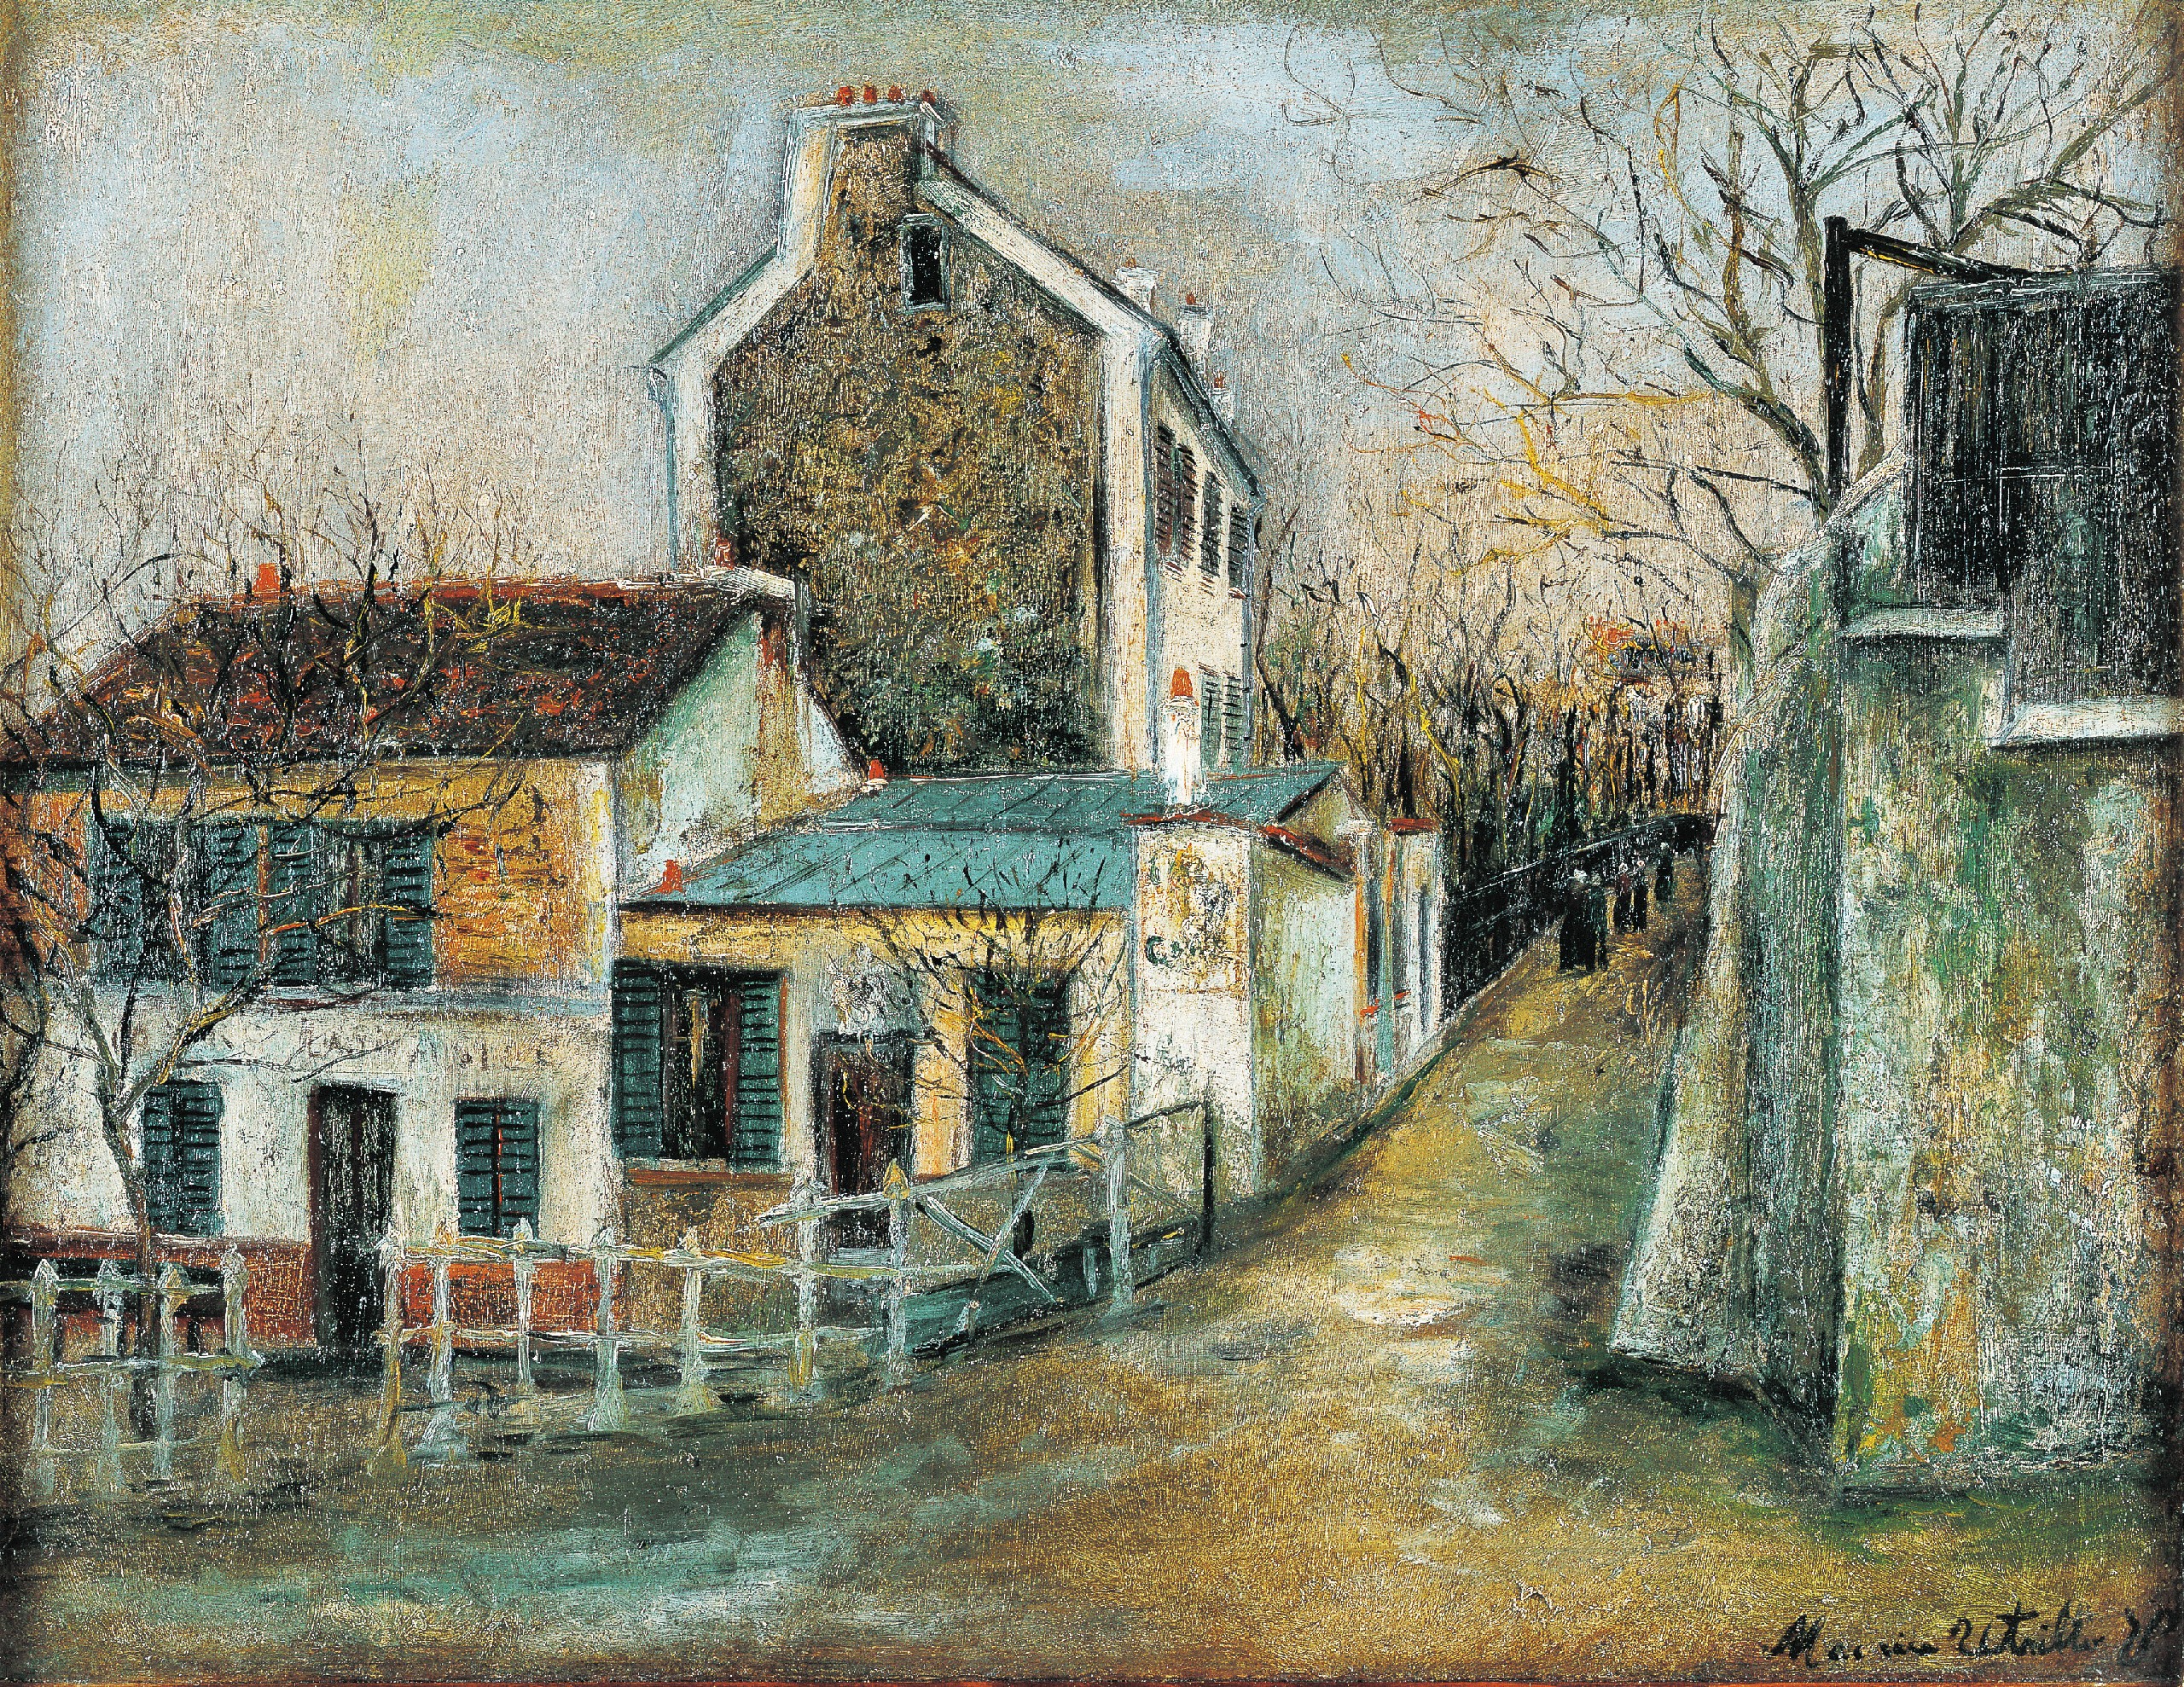 パリを愛した孤独な画家の物語 生誕140年 モーリス・ユトリロ展 